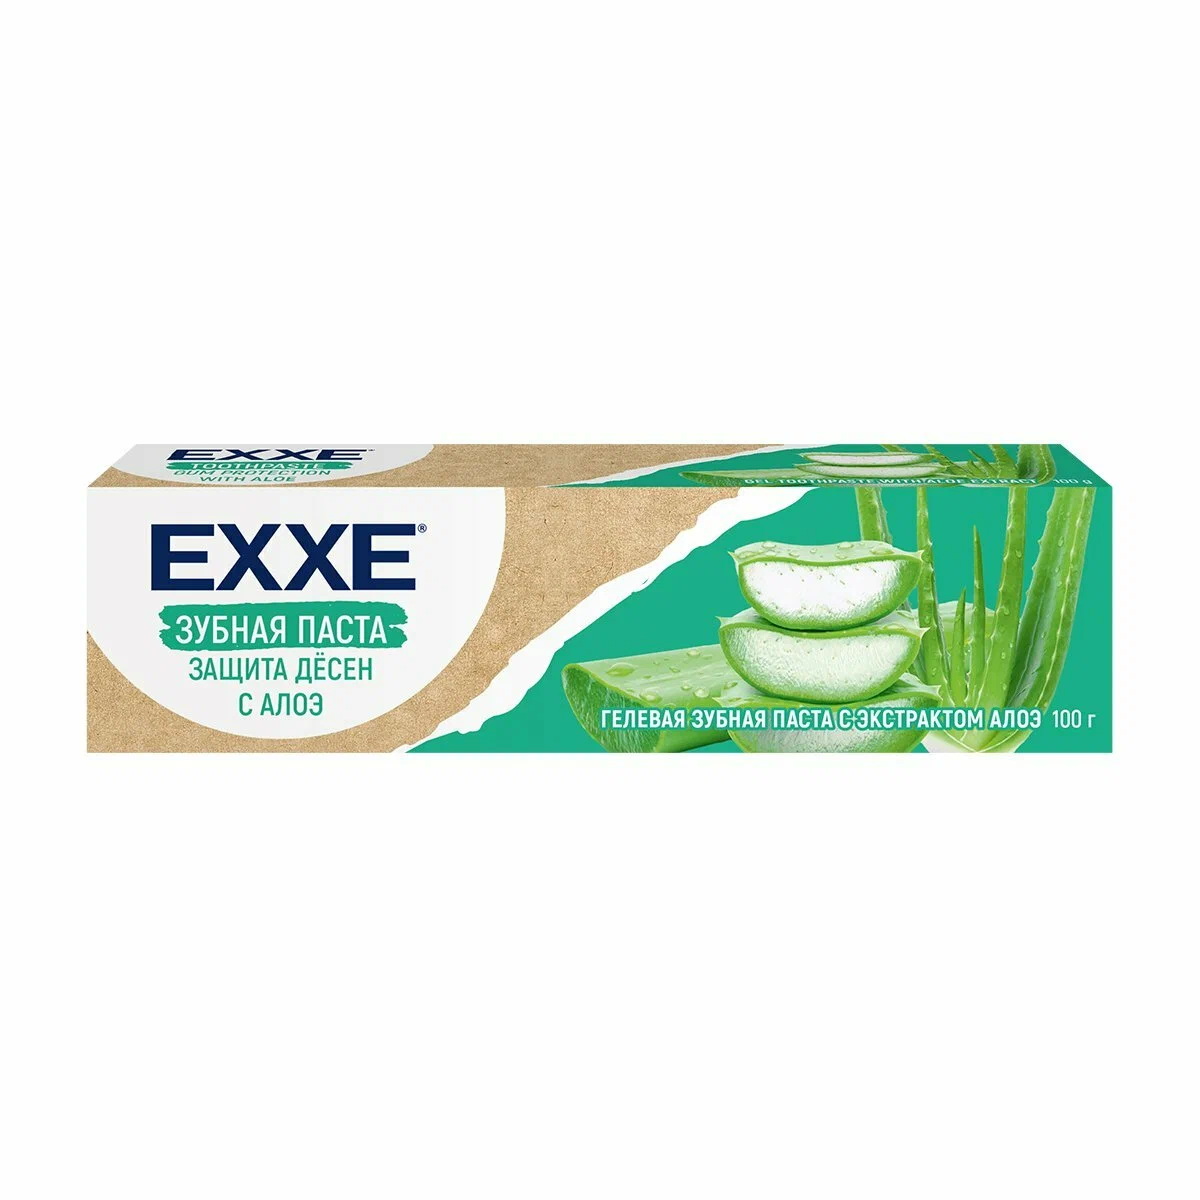 Зубная паста EXXE "Защита десен с Алоэ" 7359 100г.